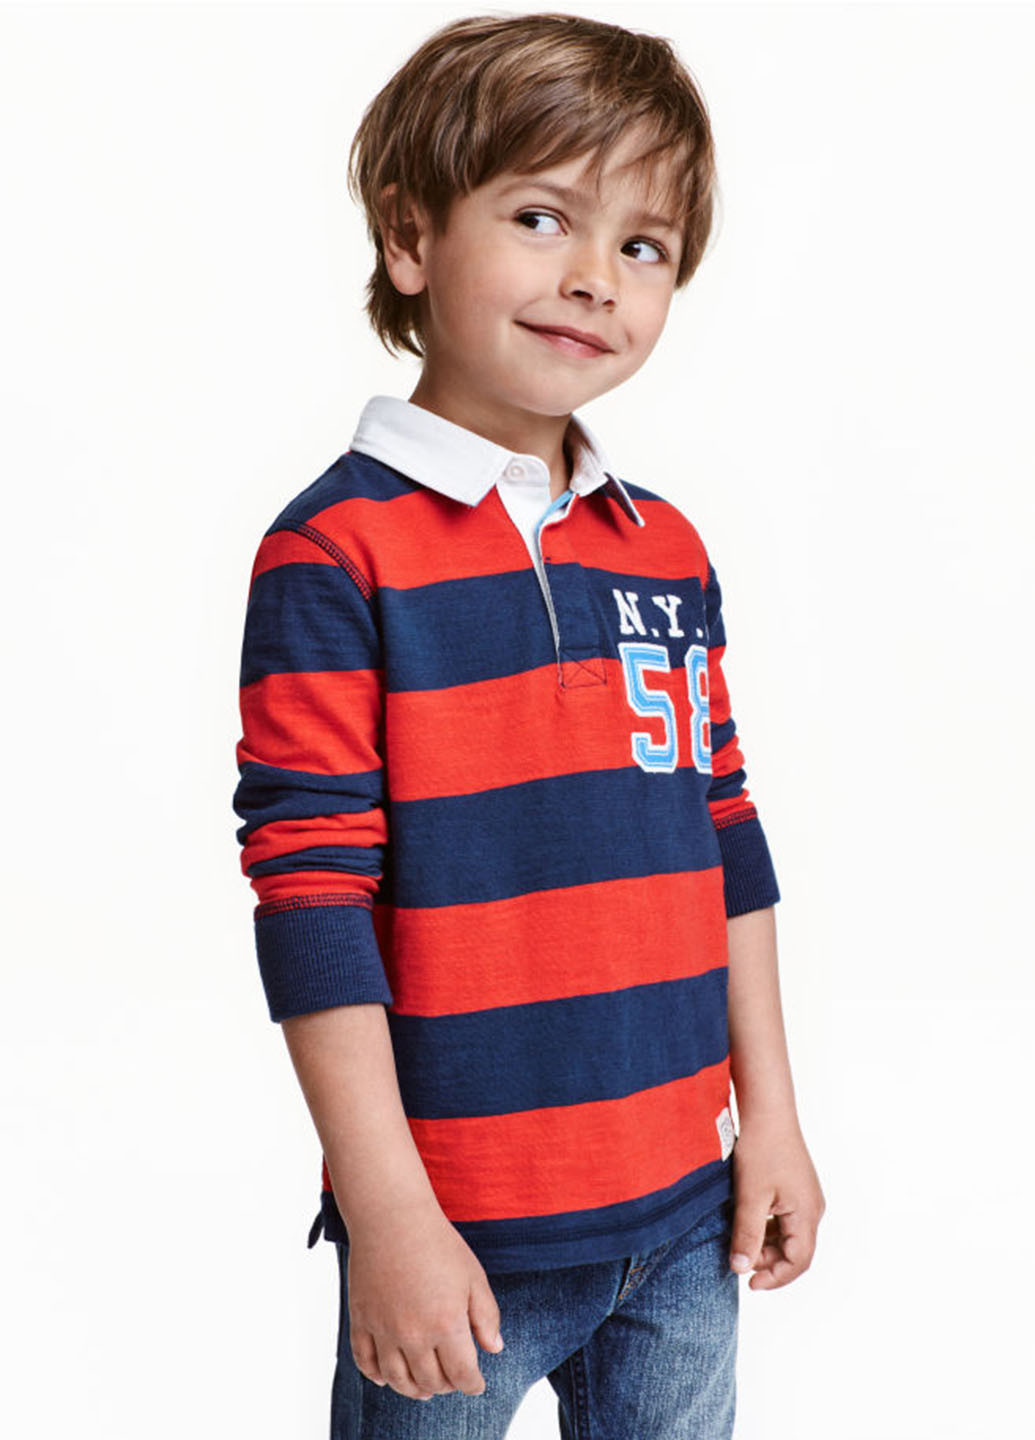 Цветная детская футболка-поло для мальчика H&M в полоску